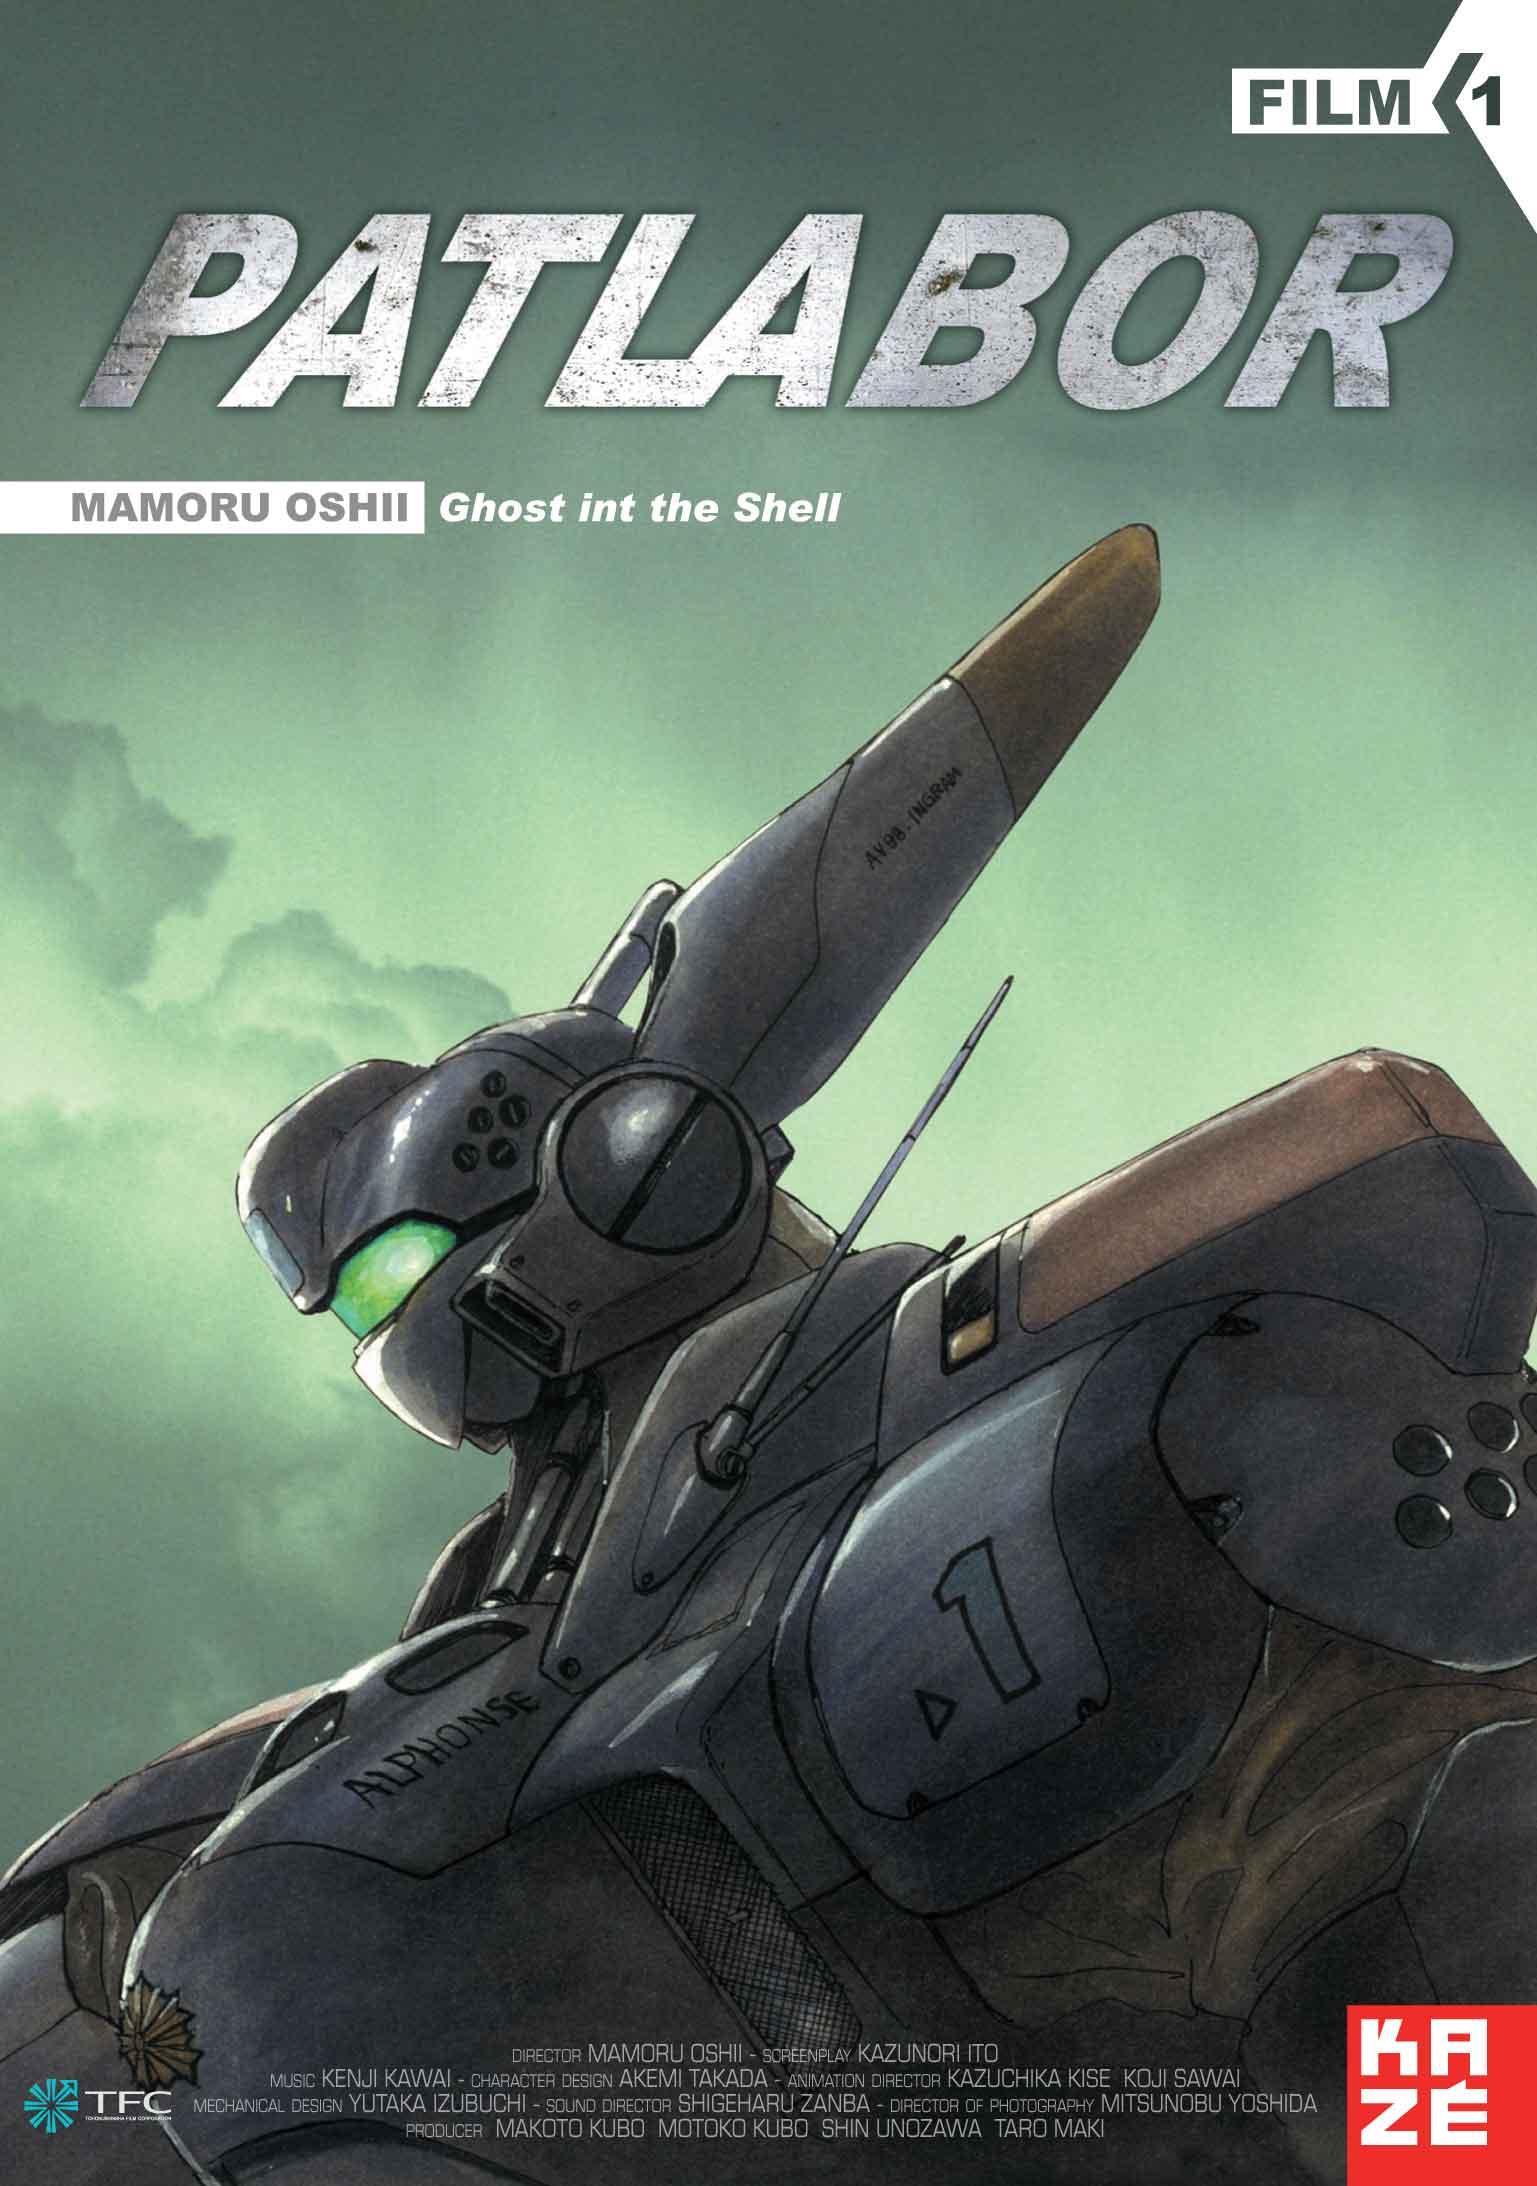 Patlabor Film 1 - Seriebox